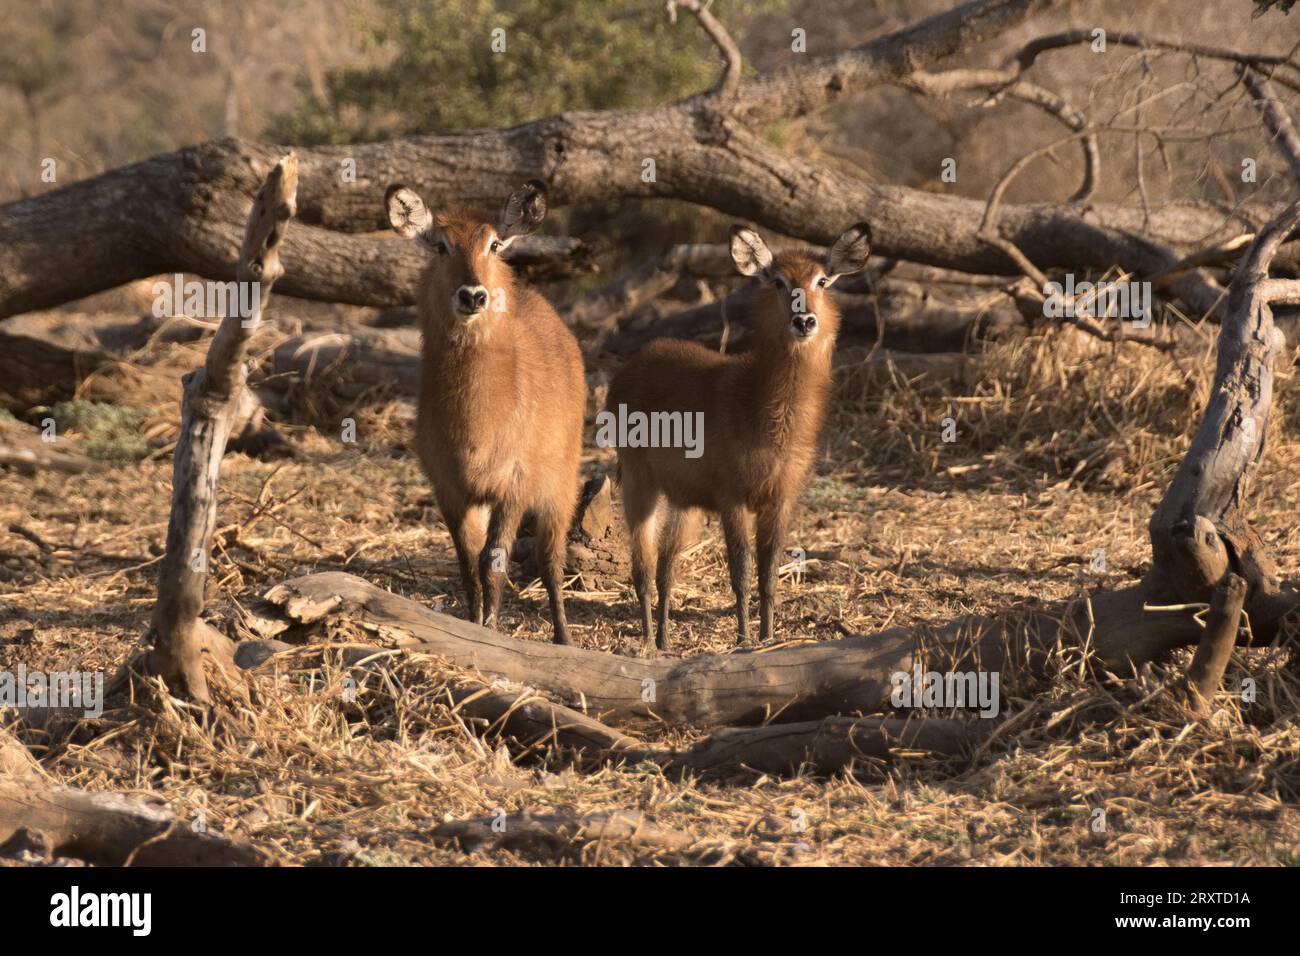 Antelopes in the Zakouma National Park, Chad Stock Photo